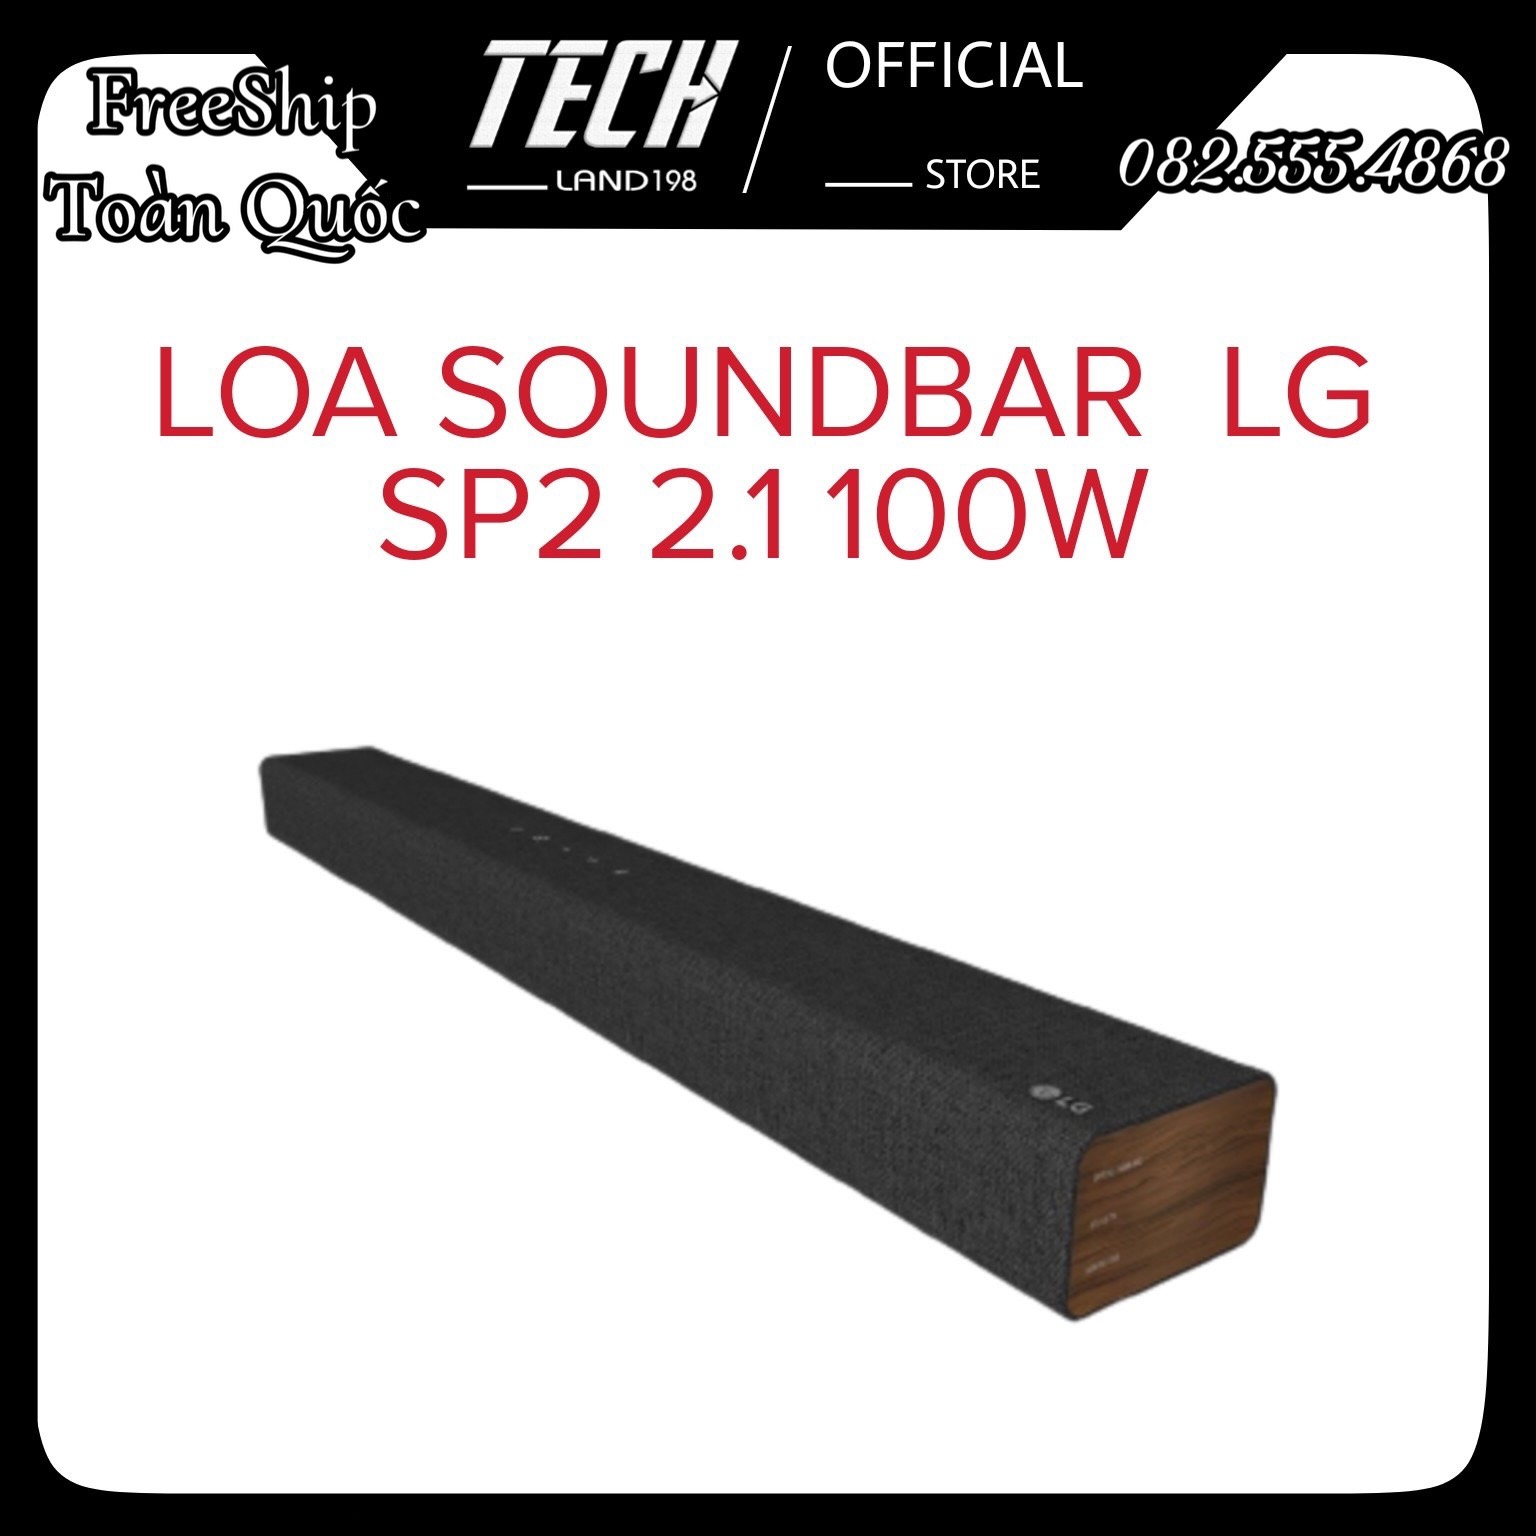 [FREE SHIP TOÀN QUỐC] Loa soundbar LG SP2  2.1 100W - Hàng chính hãng